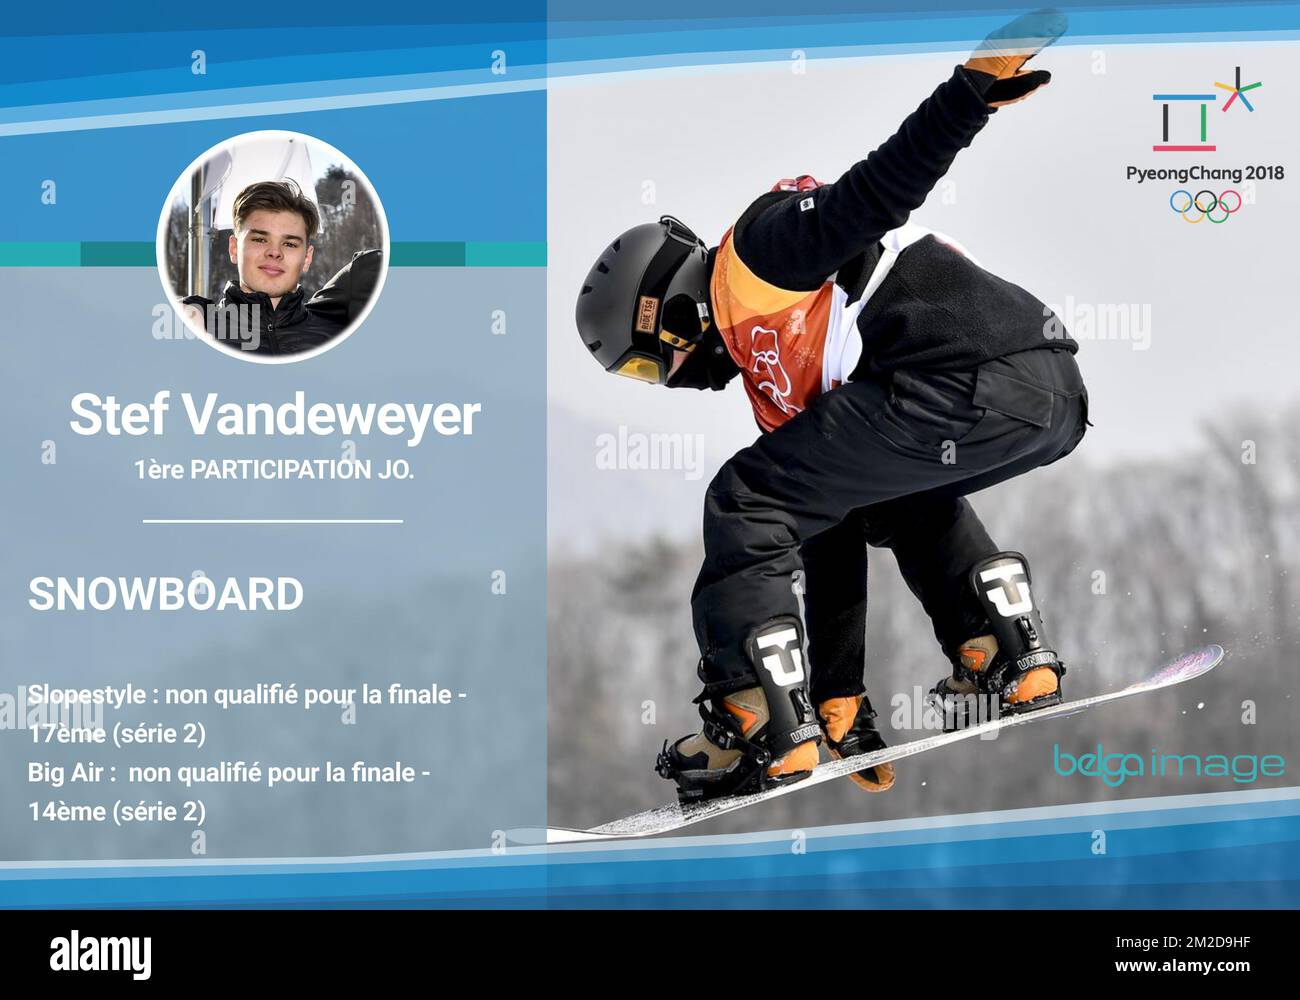 Infografik zu den Ergebnissen von Stef Vandeweyer (belgisches Team) bei den Olympischen Spielen 2018 in Pyeongchang am Freitag, den 23. Februar 2018. BELGA FOTO MORGAN DUBUISSON Stockfoto